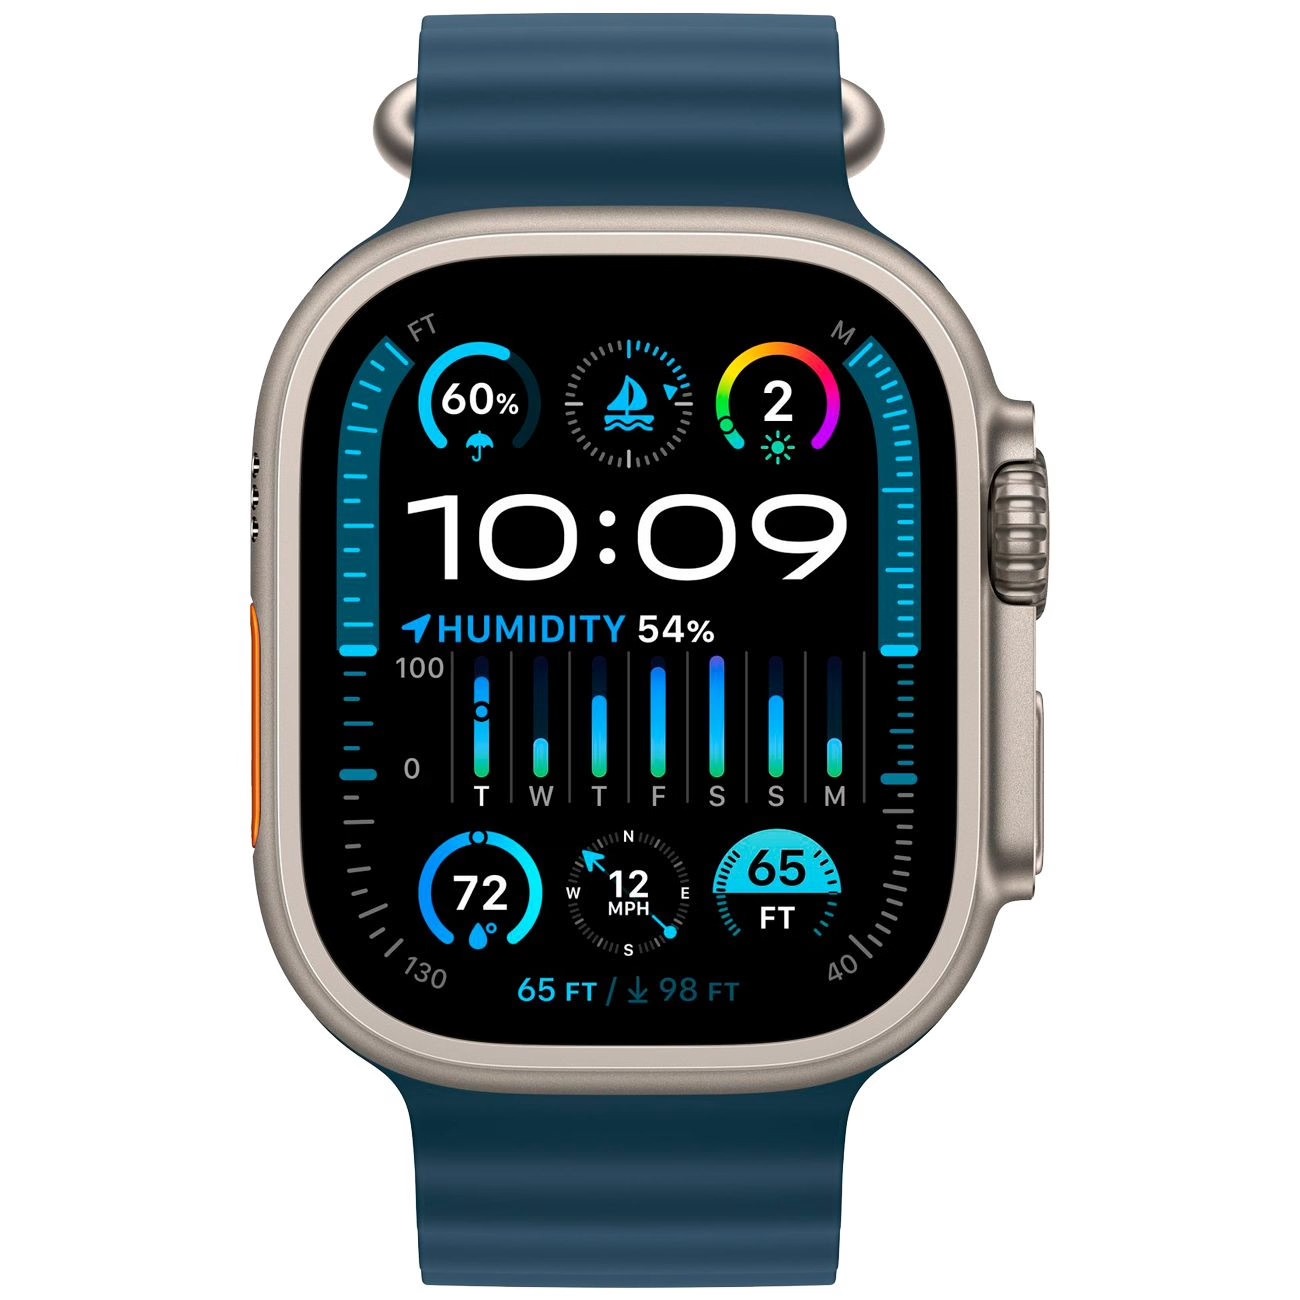 Купить смарт-часы apple watch ultra 2 ocean band blue Apple Watch Ultra 2 в официальном магазине Apple, Samsung, Xiaomi. iPixel.ru Купить, заказ, кредит, рассрочка, отзывы,  характеристики, цена,  фотографии, в подарок.